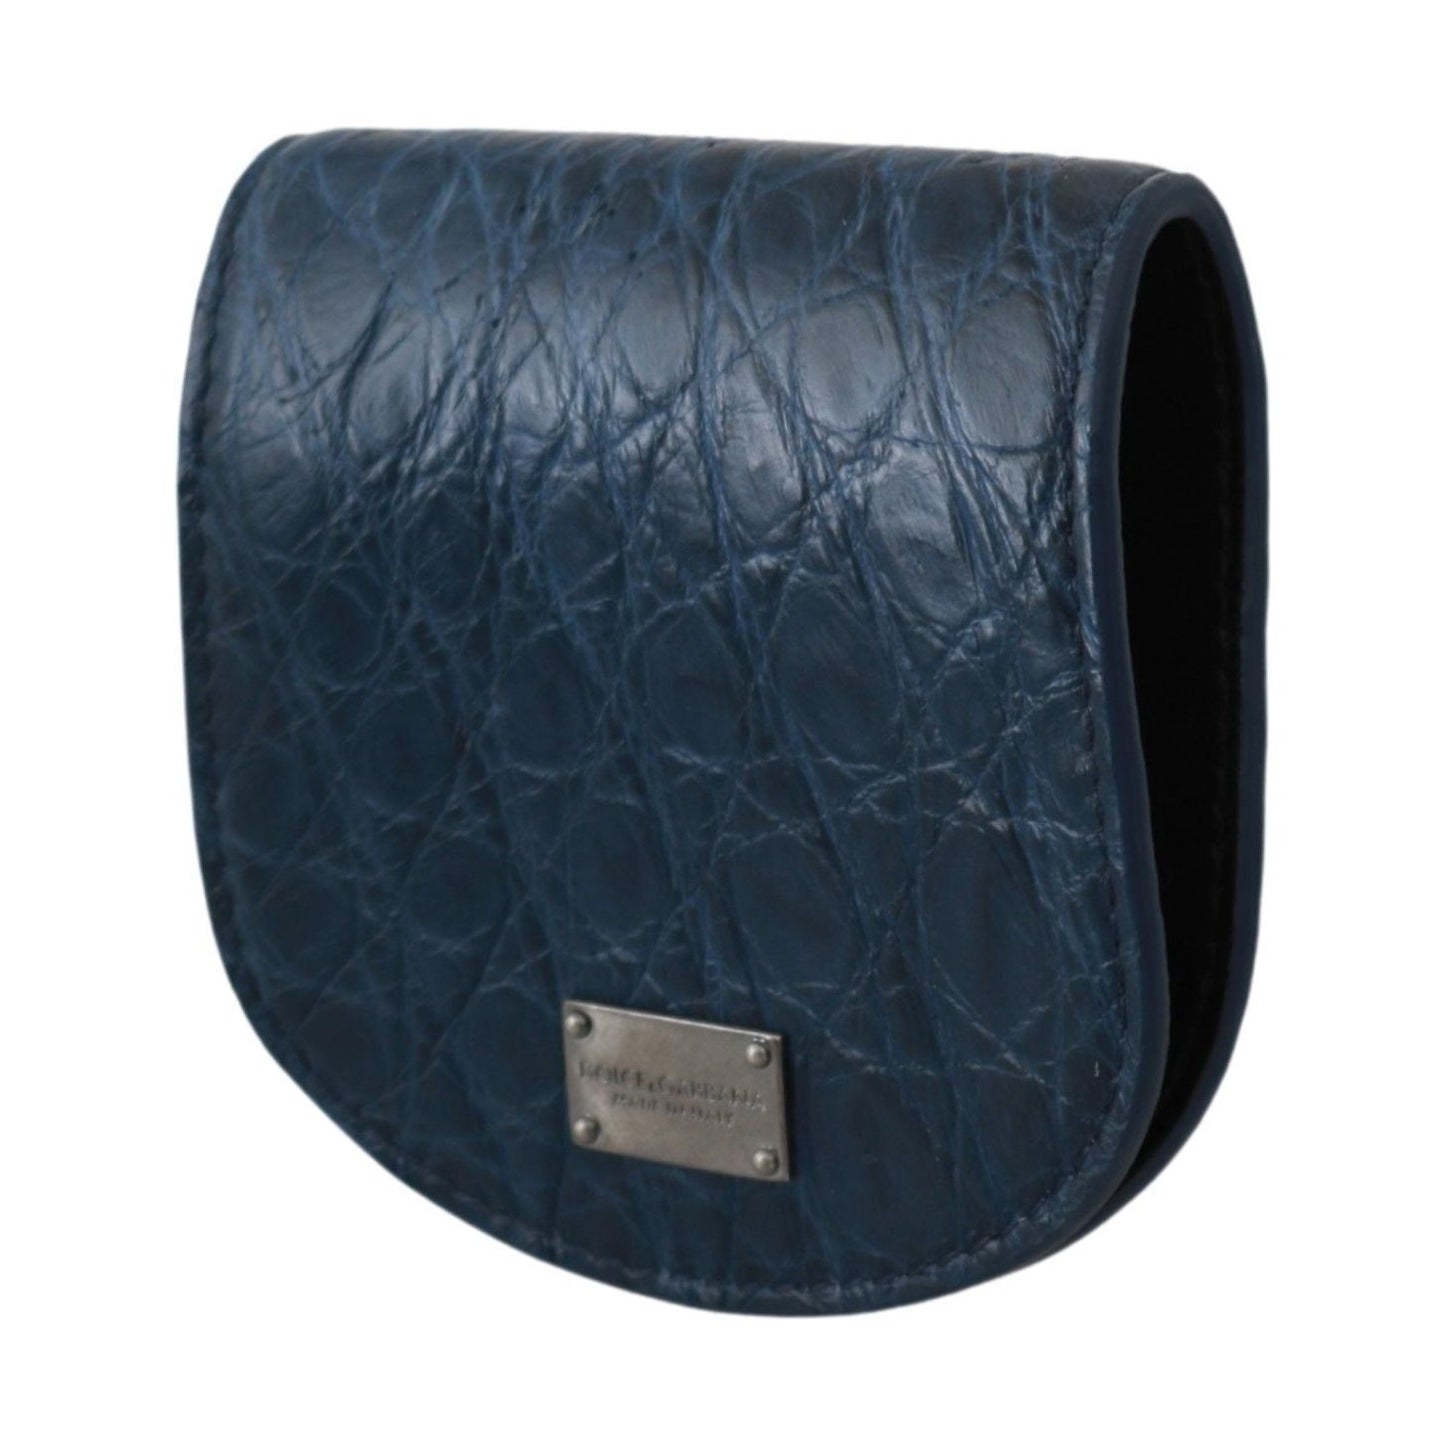 Dolce & Gabbana Elegant Blue Caimano Leather Condom Case Wallet blue-holder-pocket-wallet-blue-exotic-skin-condom-case Condom Case IMG_0145-1-e8f35182-972.jpg